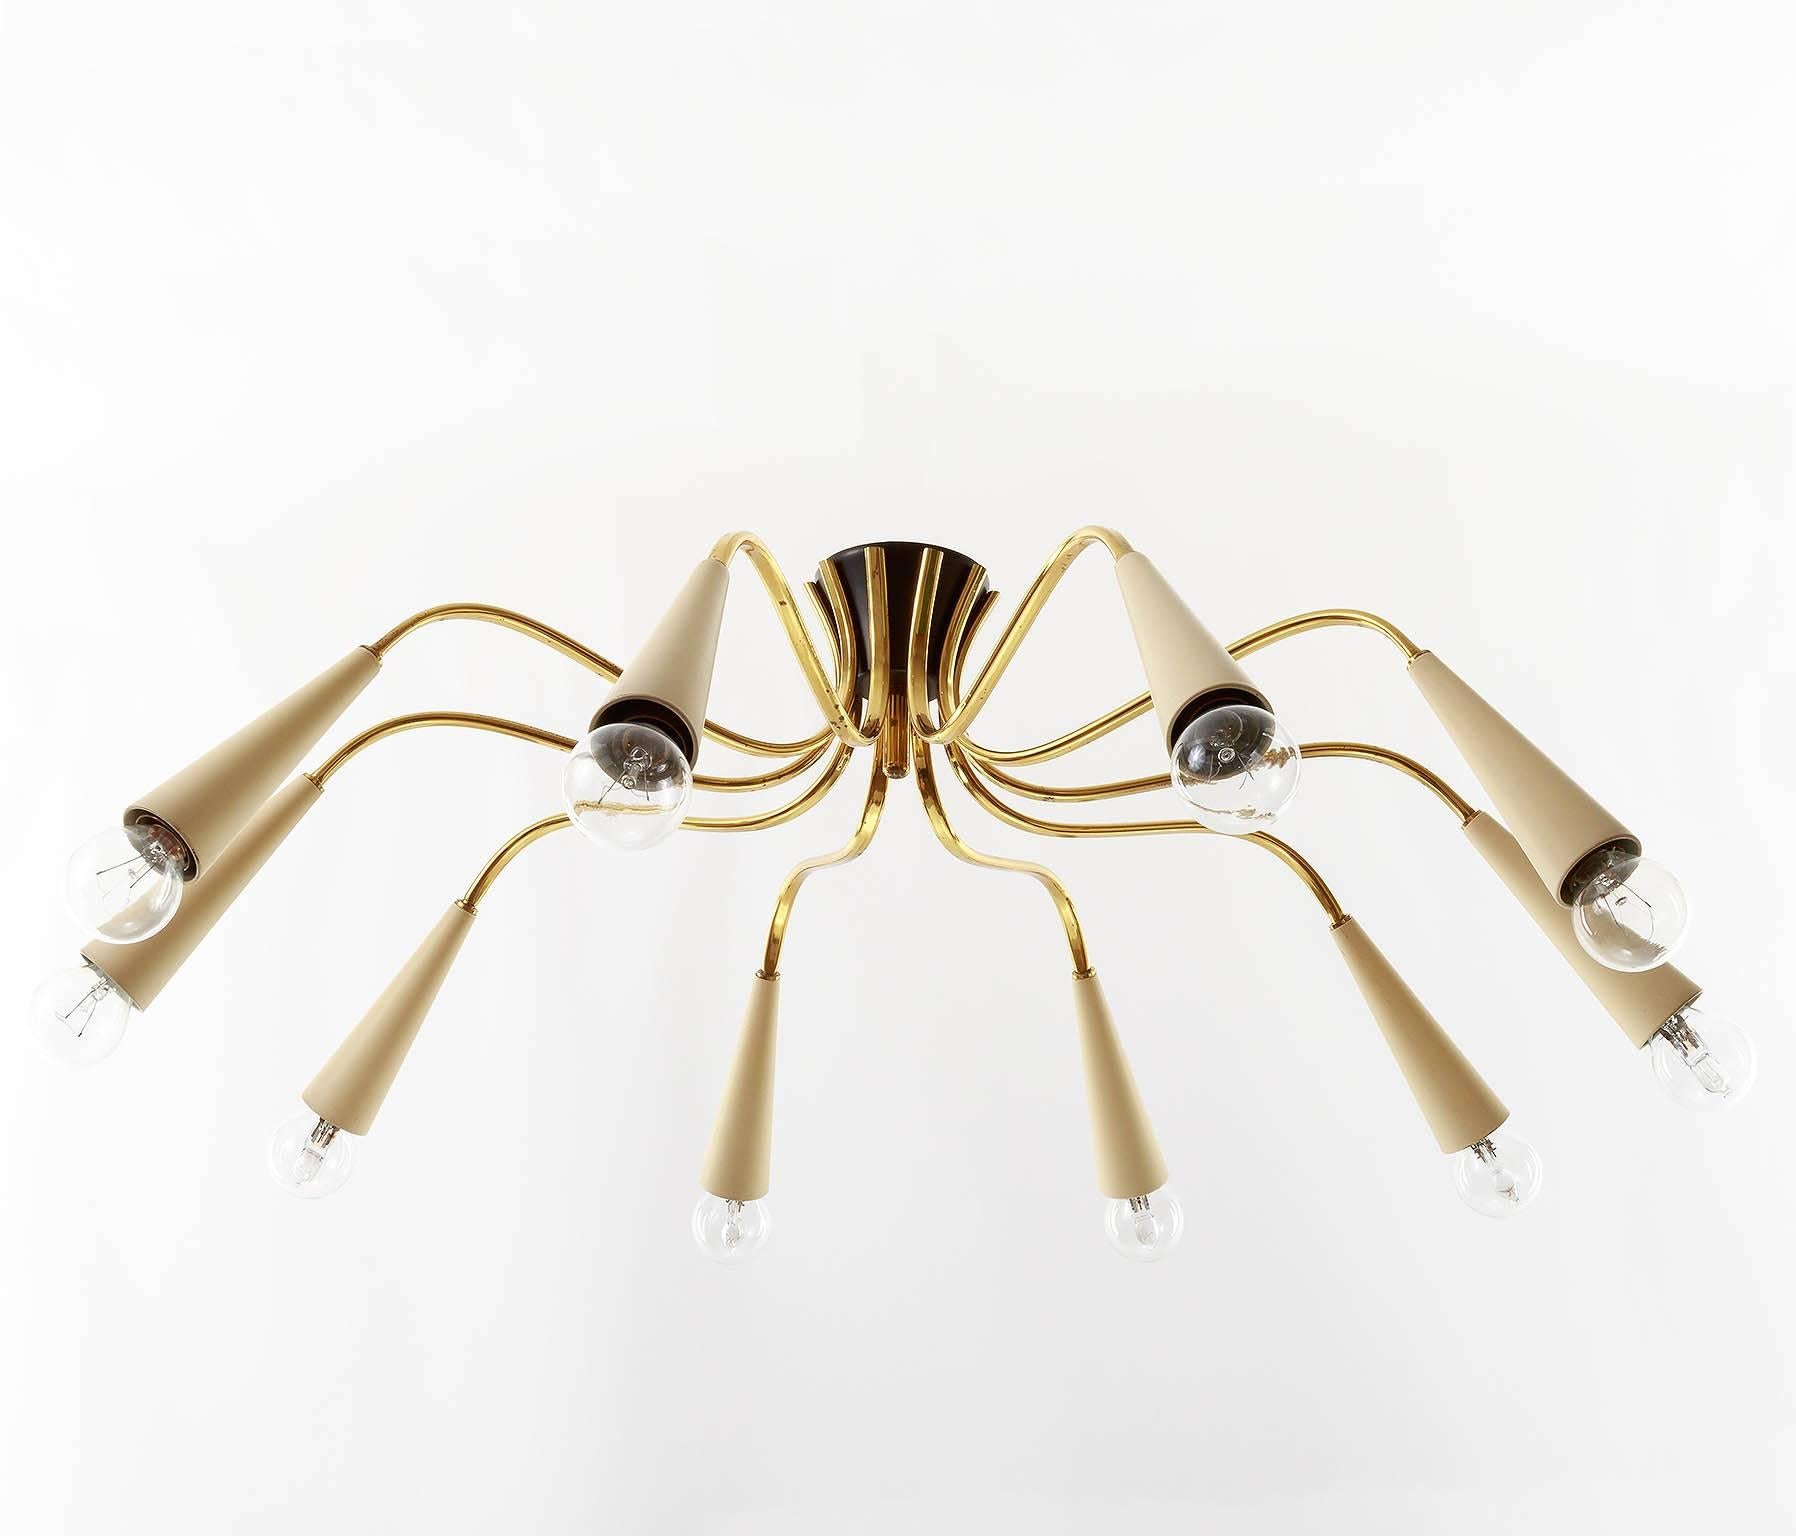 Italian ten-arm brass spider light fixture from the 1960s. Ten small base bulbs.